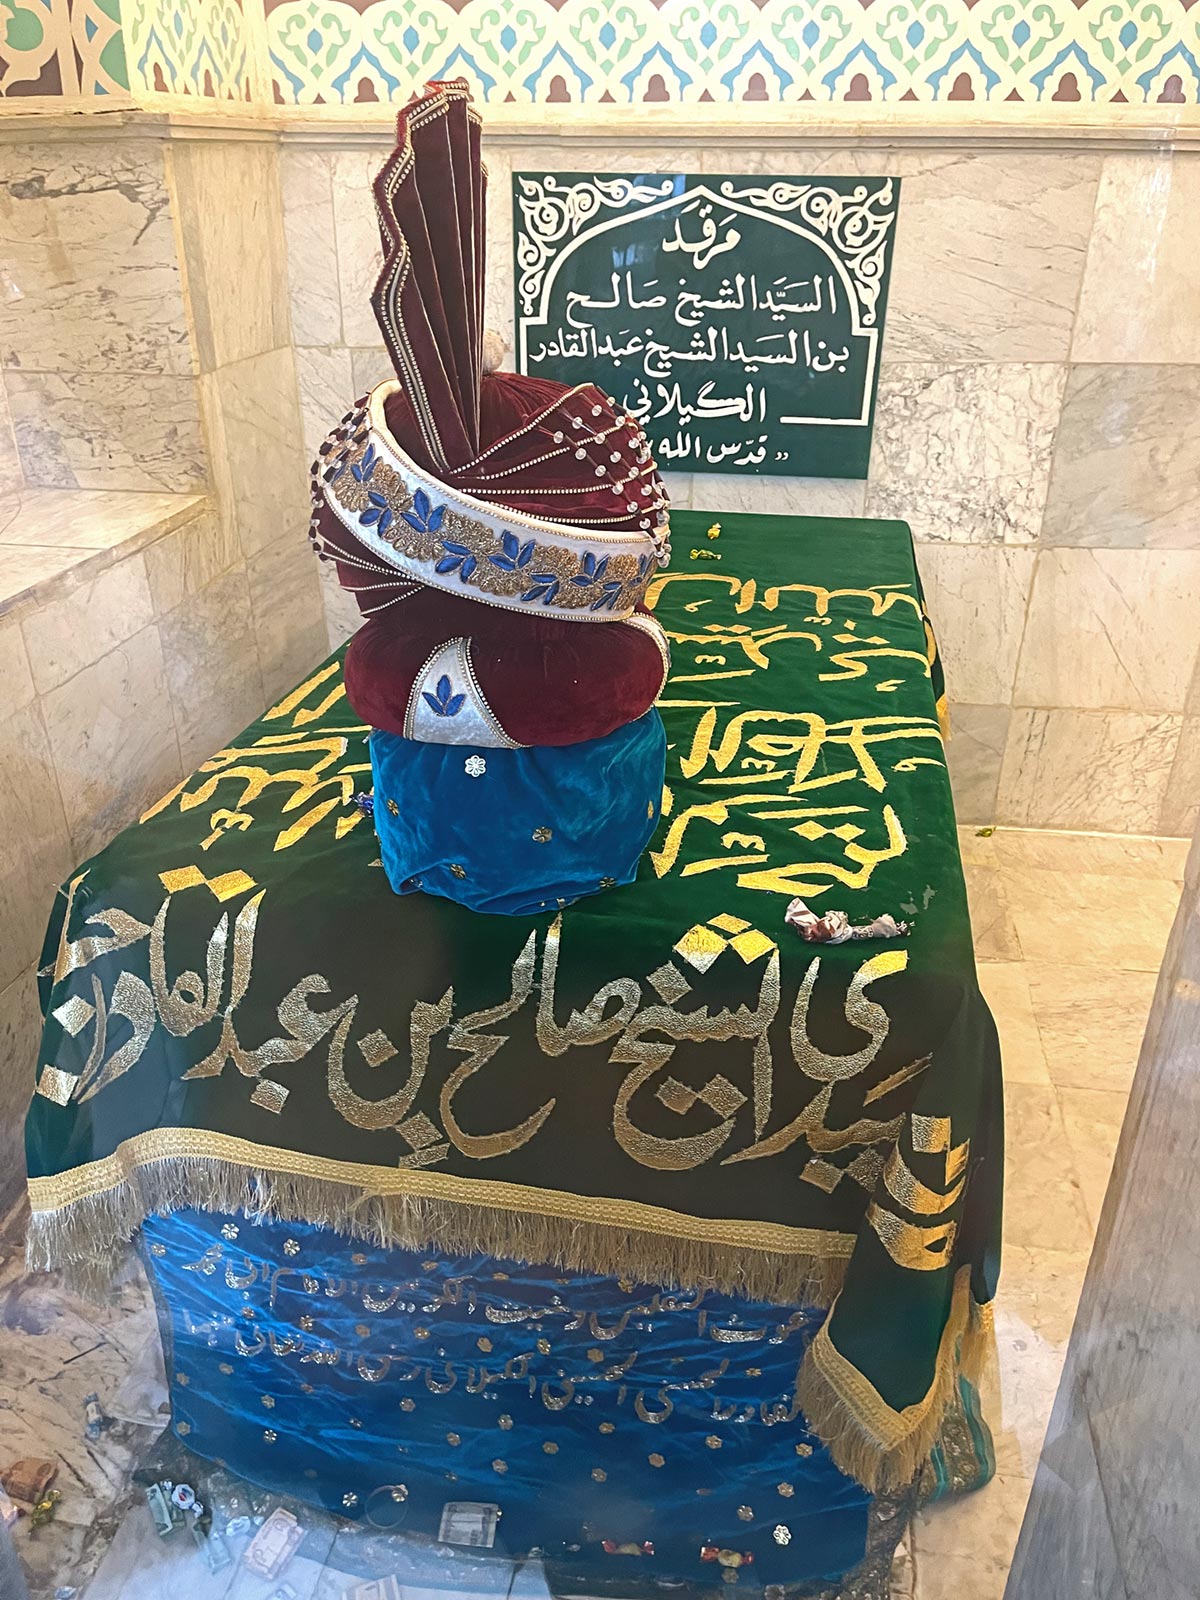 Sheikh Salihin, Abdul Qadir Gilanin pojan, hauta Abdul Qadir Gilanin mausoleumissa Bagdadissa